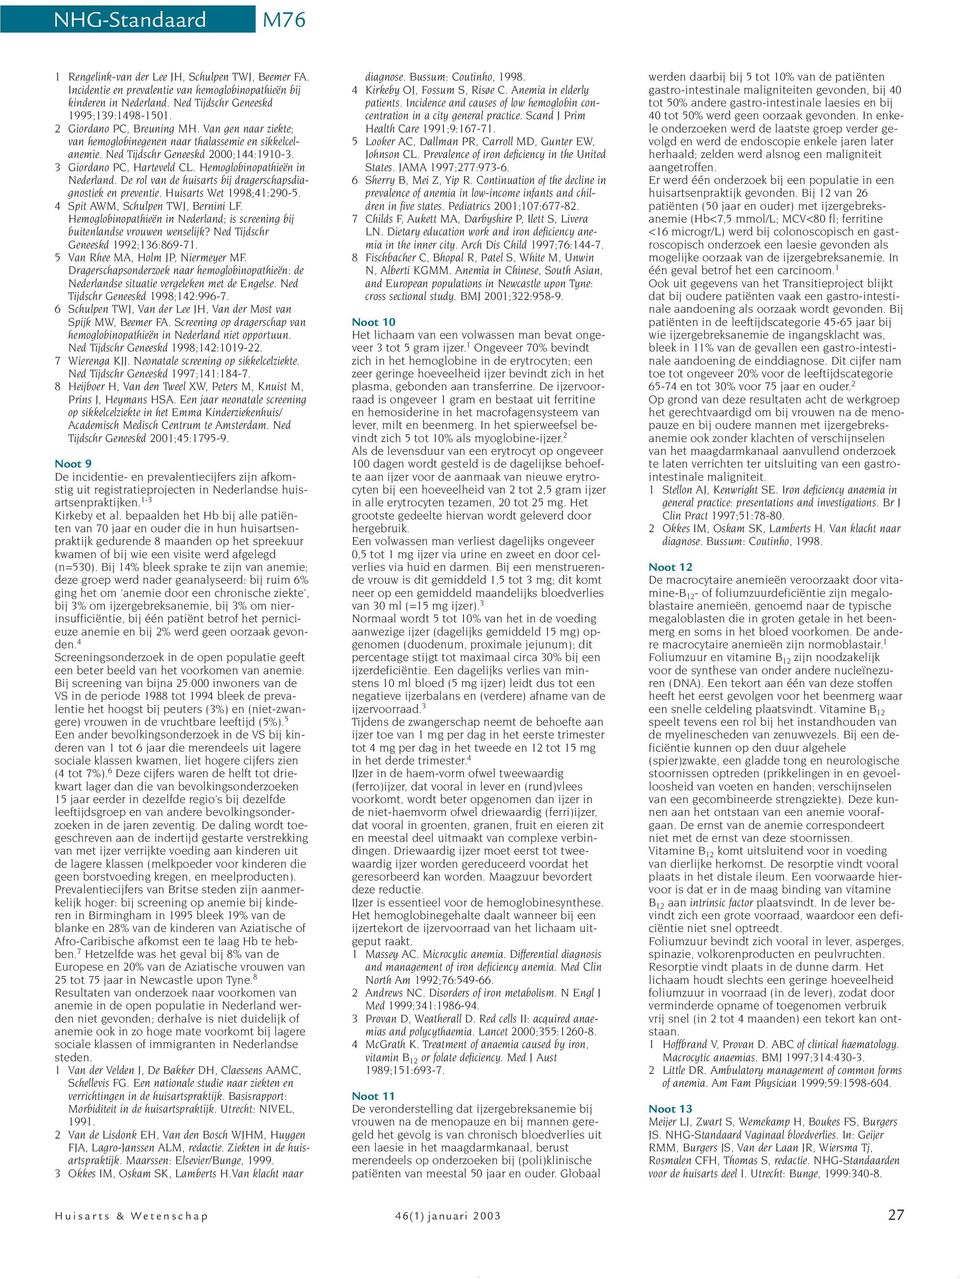 De rol van de huisarts bij dragerschapsdiagnostiek en preventie. Huisarts Wet 1998;41:290-5. 4 Spit AWM, Schulpen TWJ, Bernini LF.